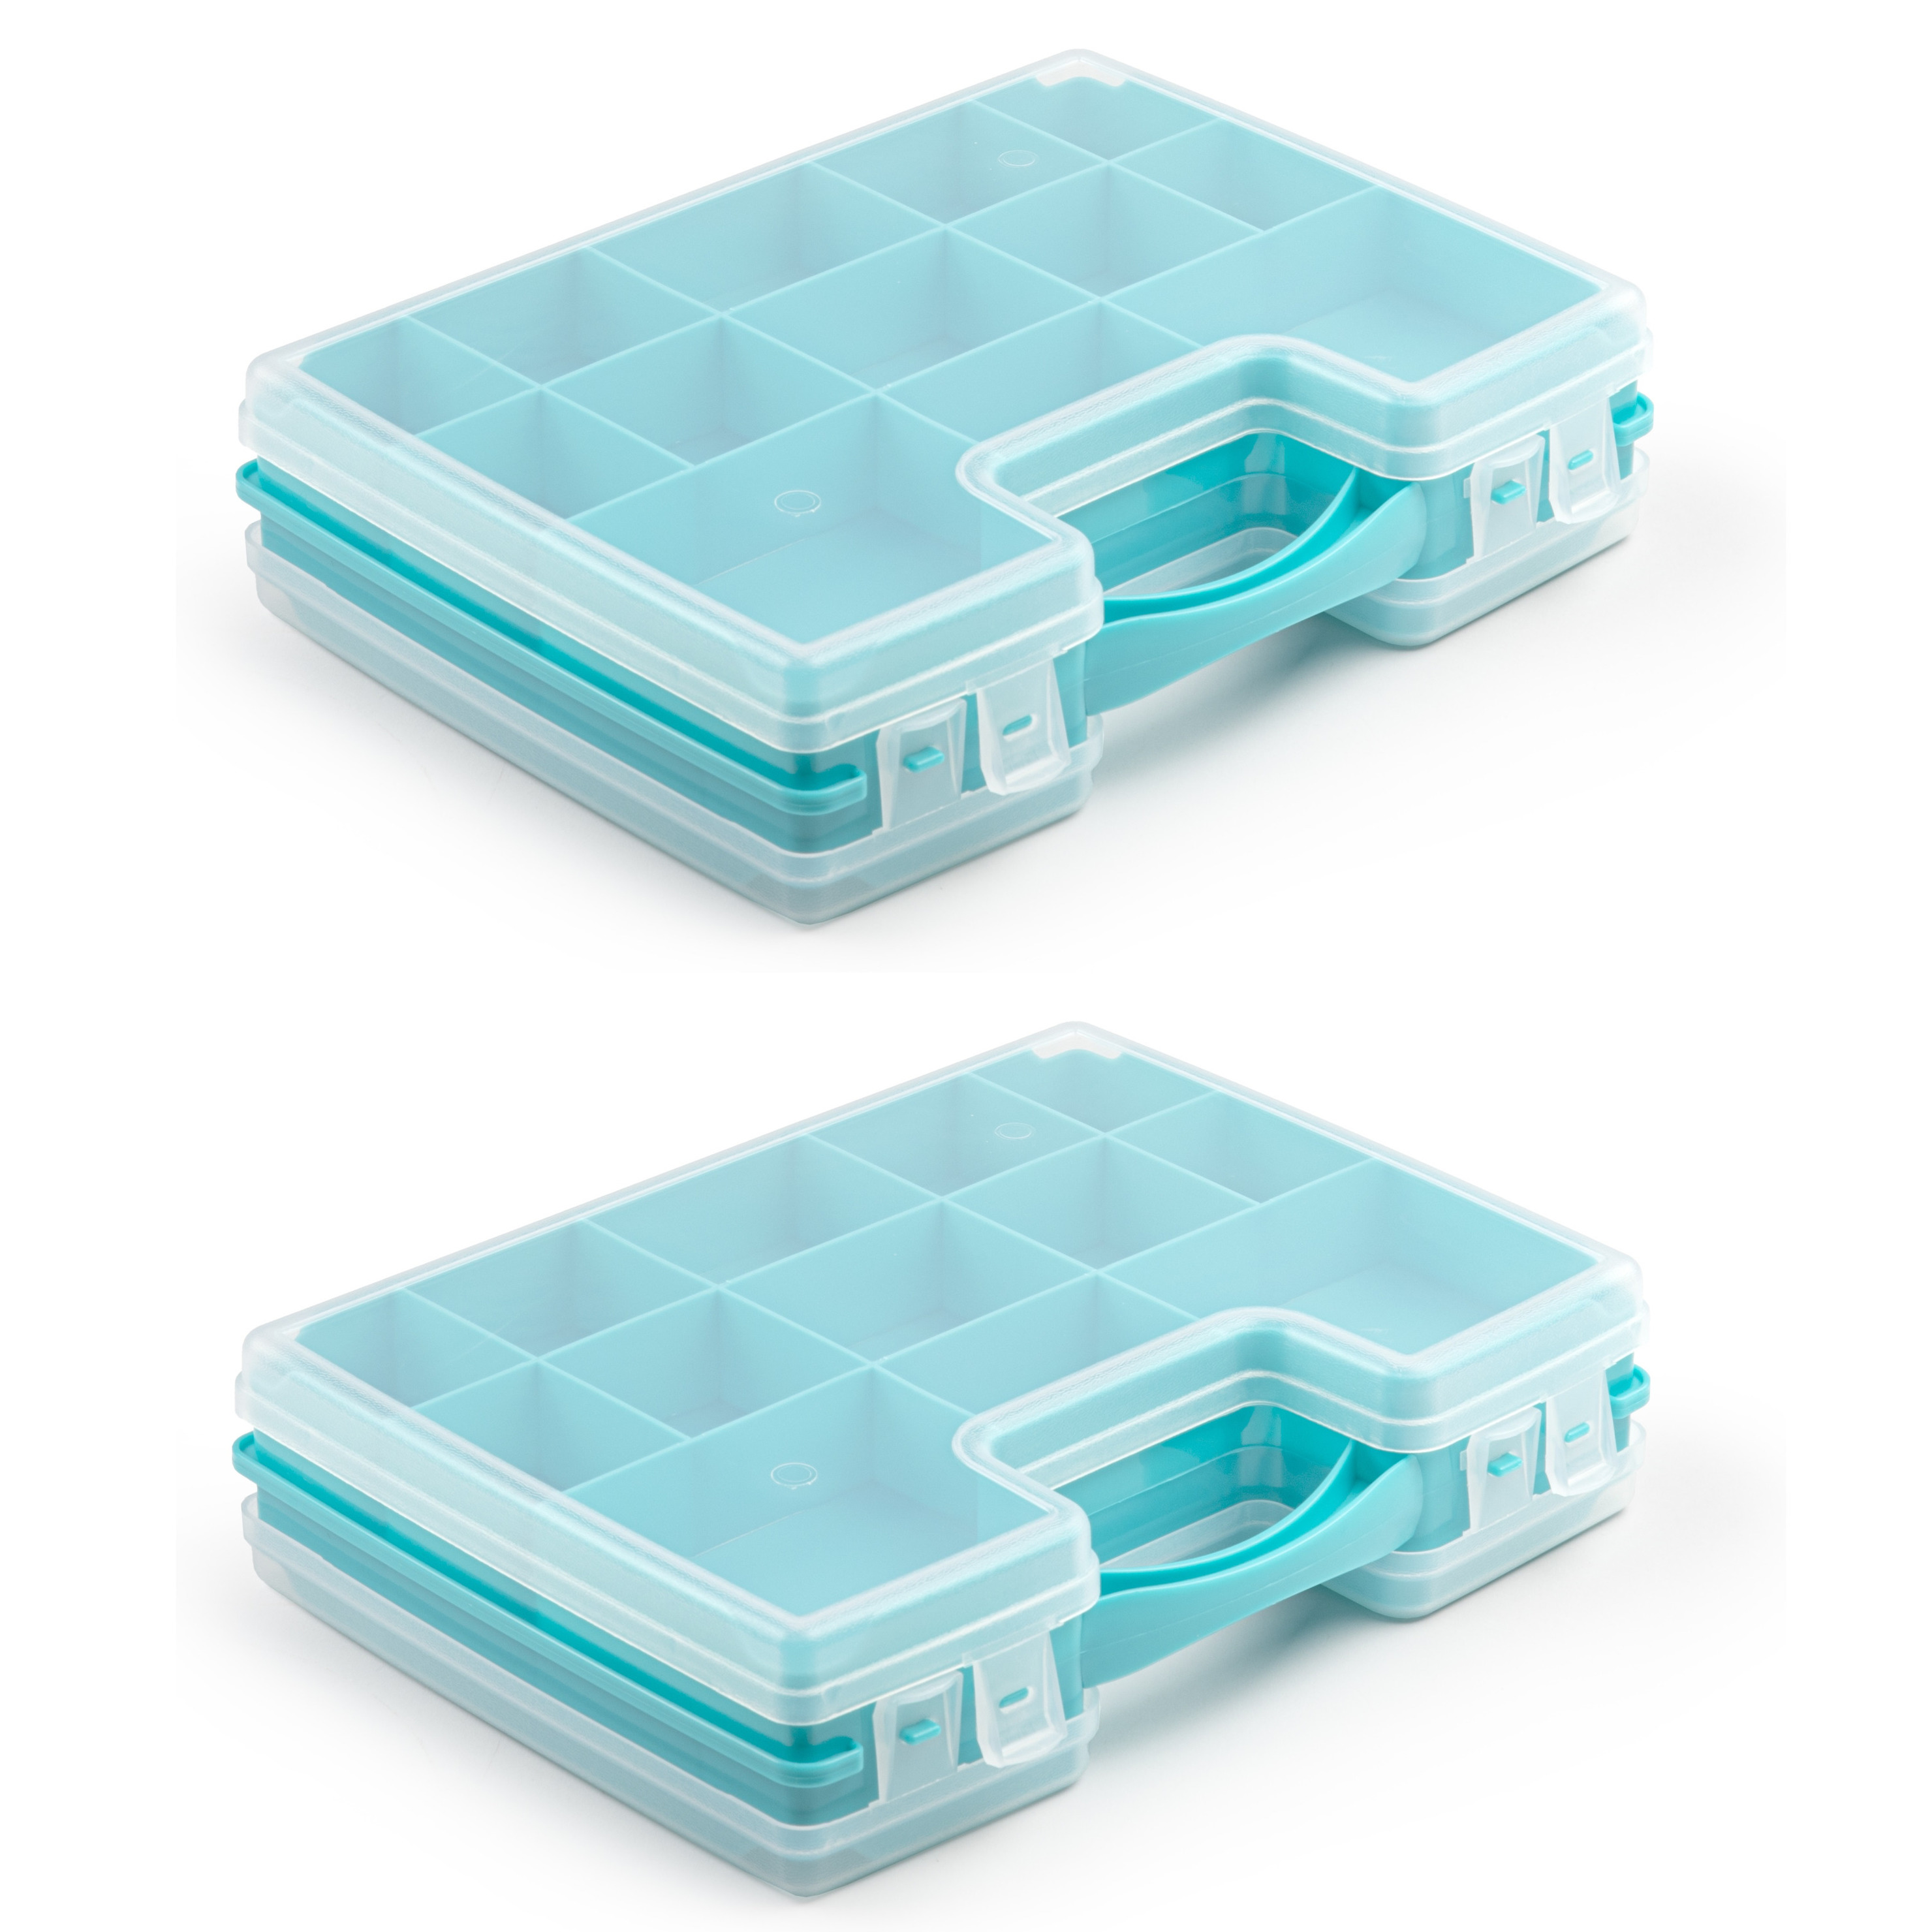 3x stuks opbergkoffertje-opbergdoos-sorteerboxen 22-vaks kunststof blauw 28 x 21 x 6 cm